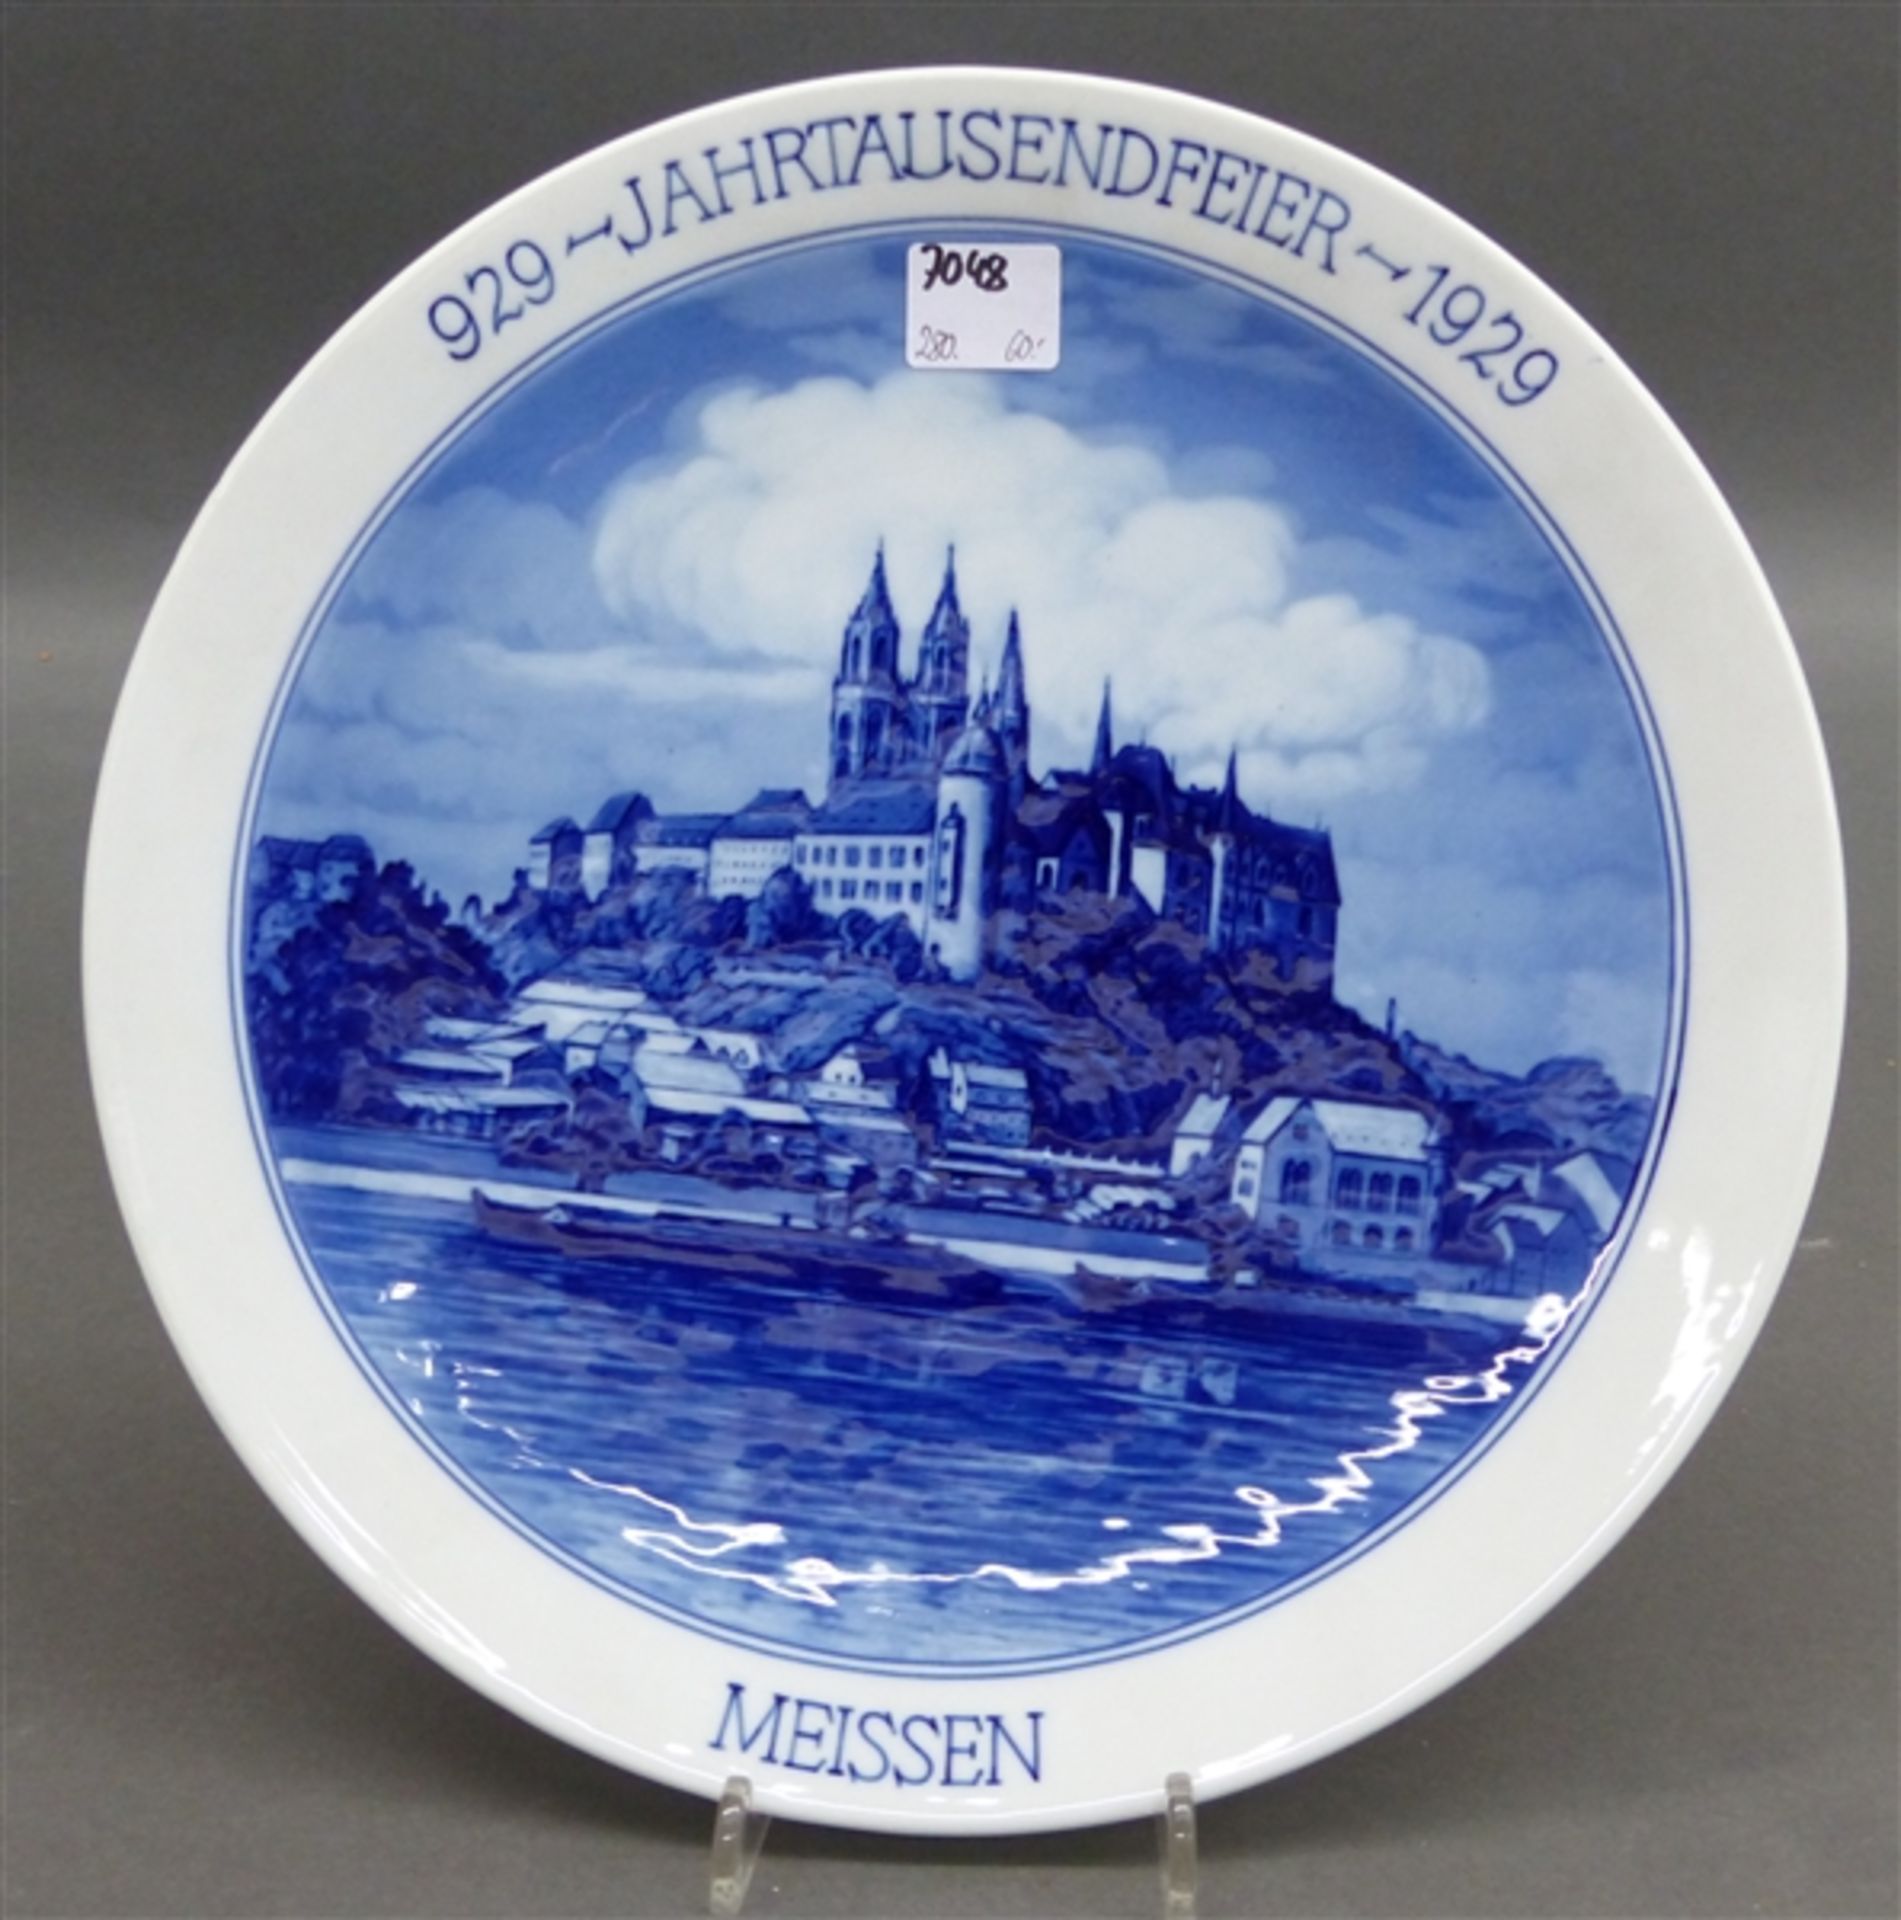 Jubiläumsteller Porzellan, "Jahrhundertfeier Meissen 929-1929", blaue Stadtansicht mit Elbe, blaue